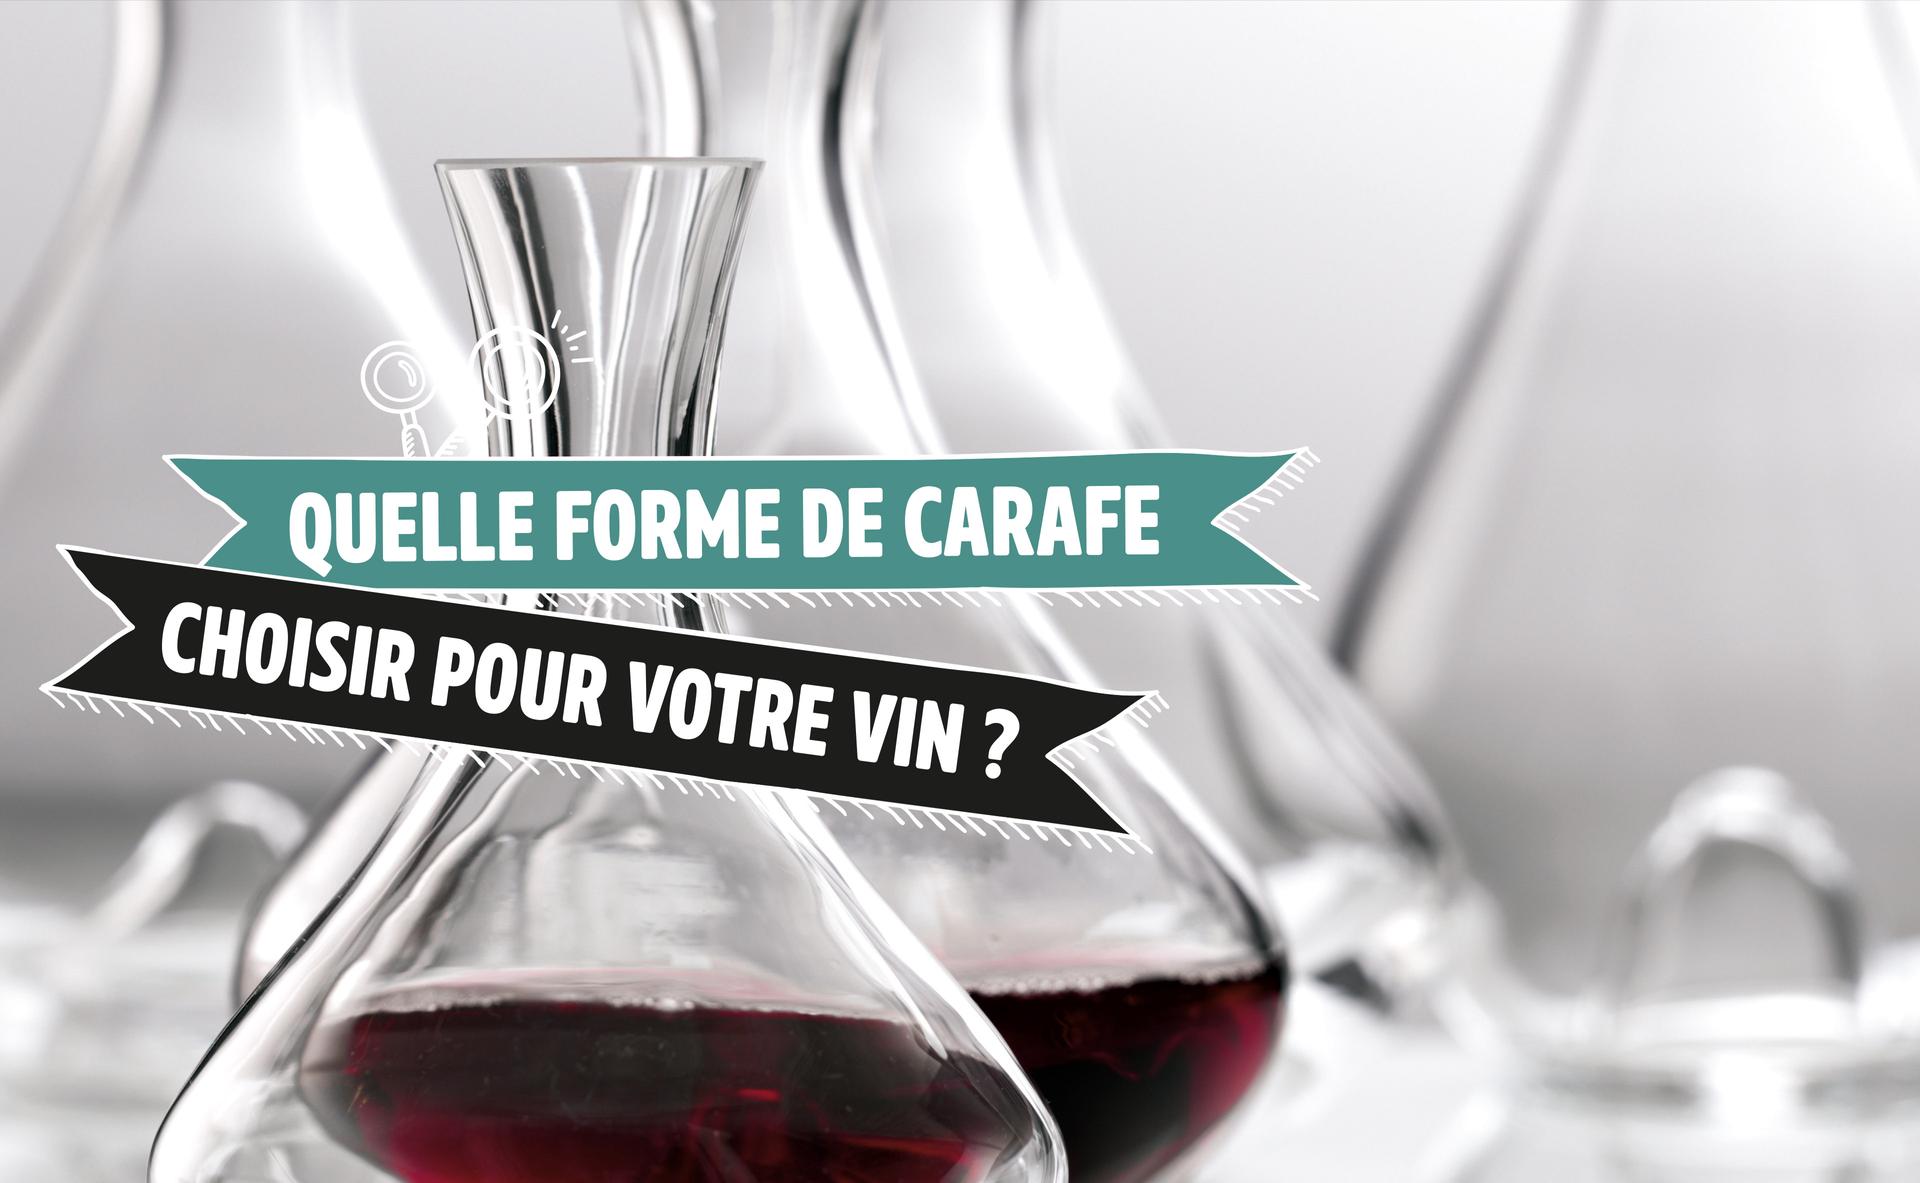 Quelle forme de carafe choisir pour votre vin ?